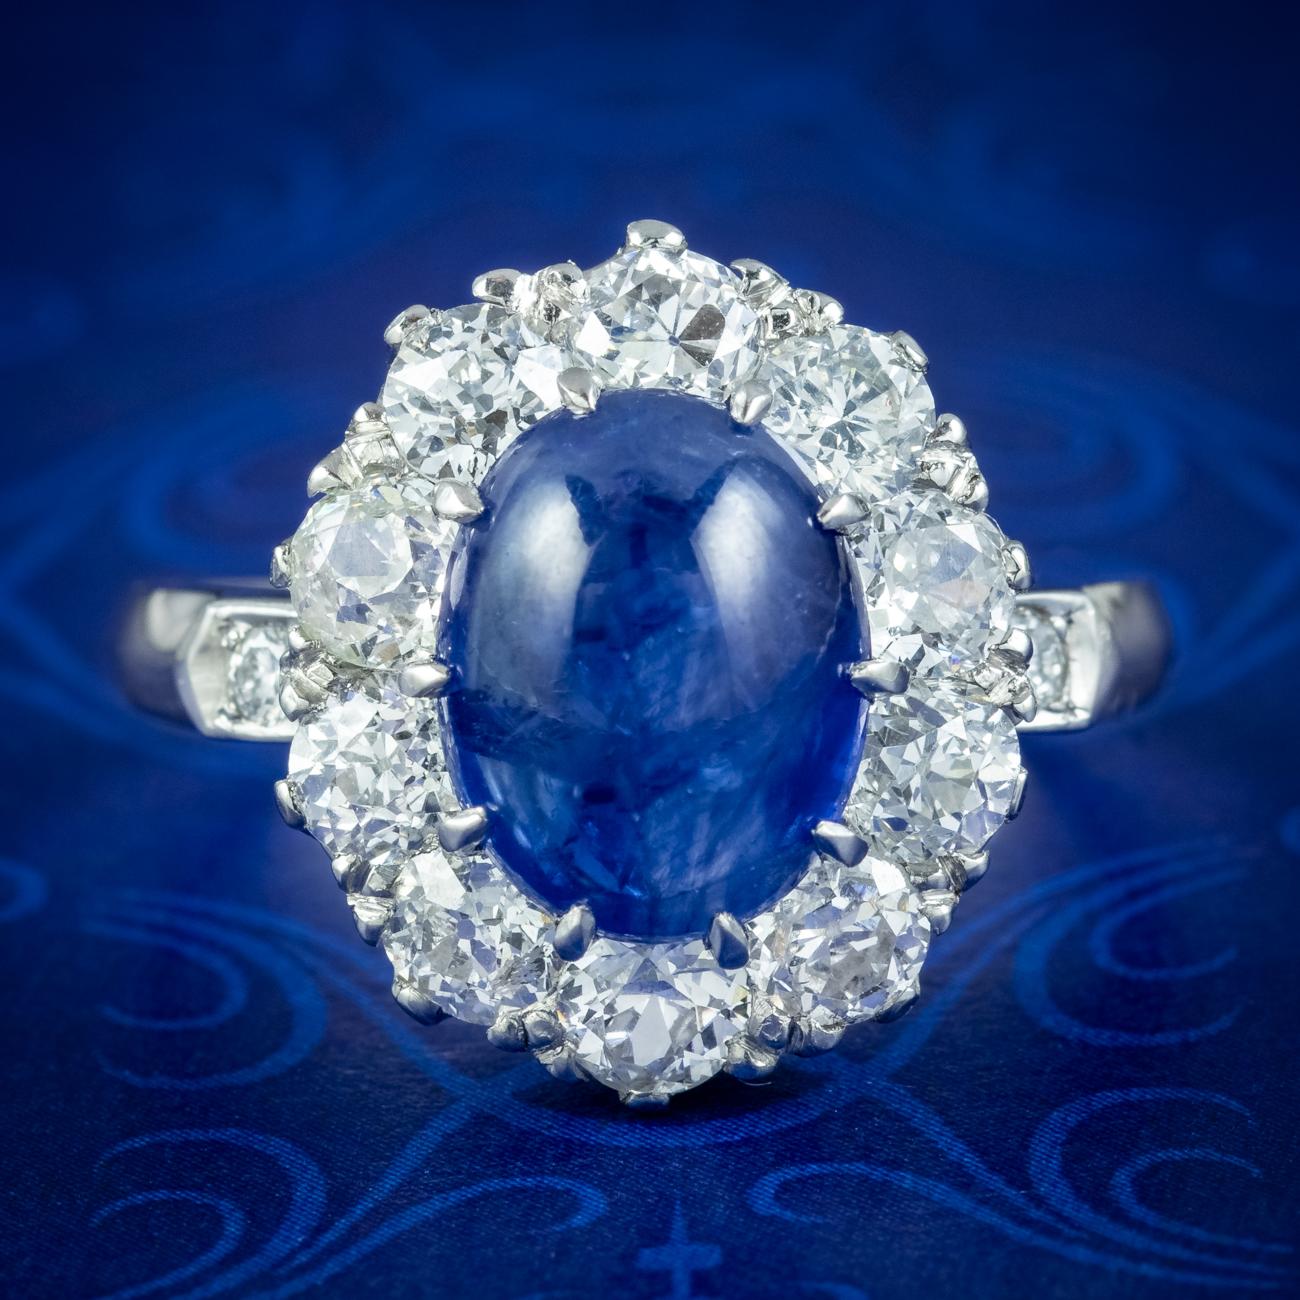 Ein hervorragender, viktorianisch inspirierter Ring mit einem verführerischen blauen Cabochon-Saphir als Herzstück, umgeben von zehn leuchtenden Diamanten im alten europäischen Schliff am Rand und einem weiteren auf jeder Schulter.

Das Stück wird